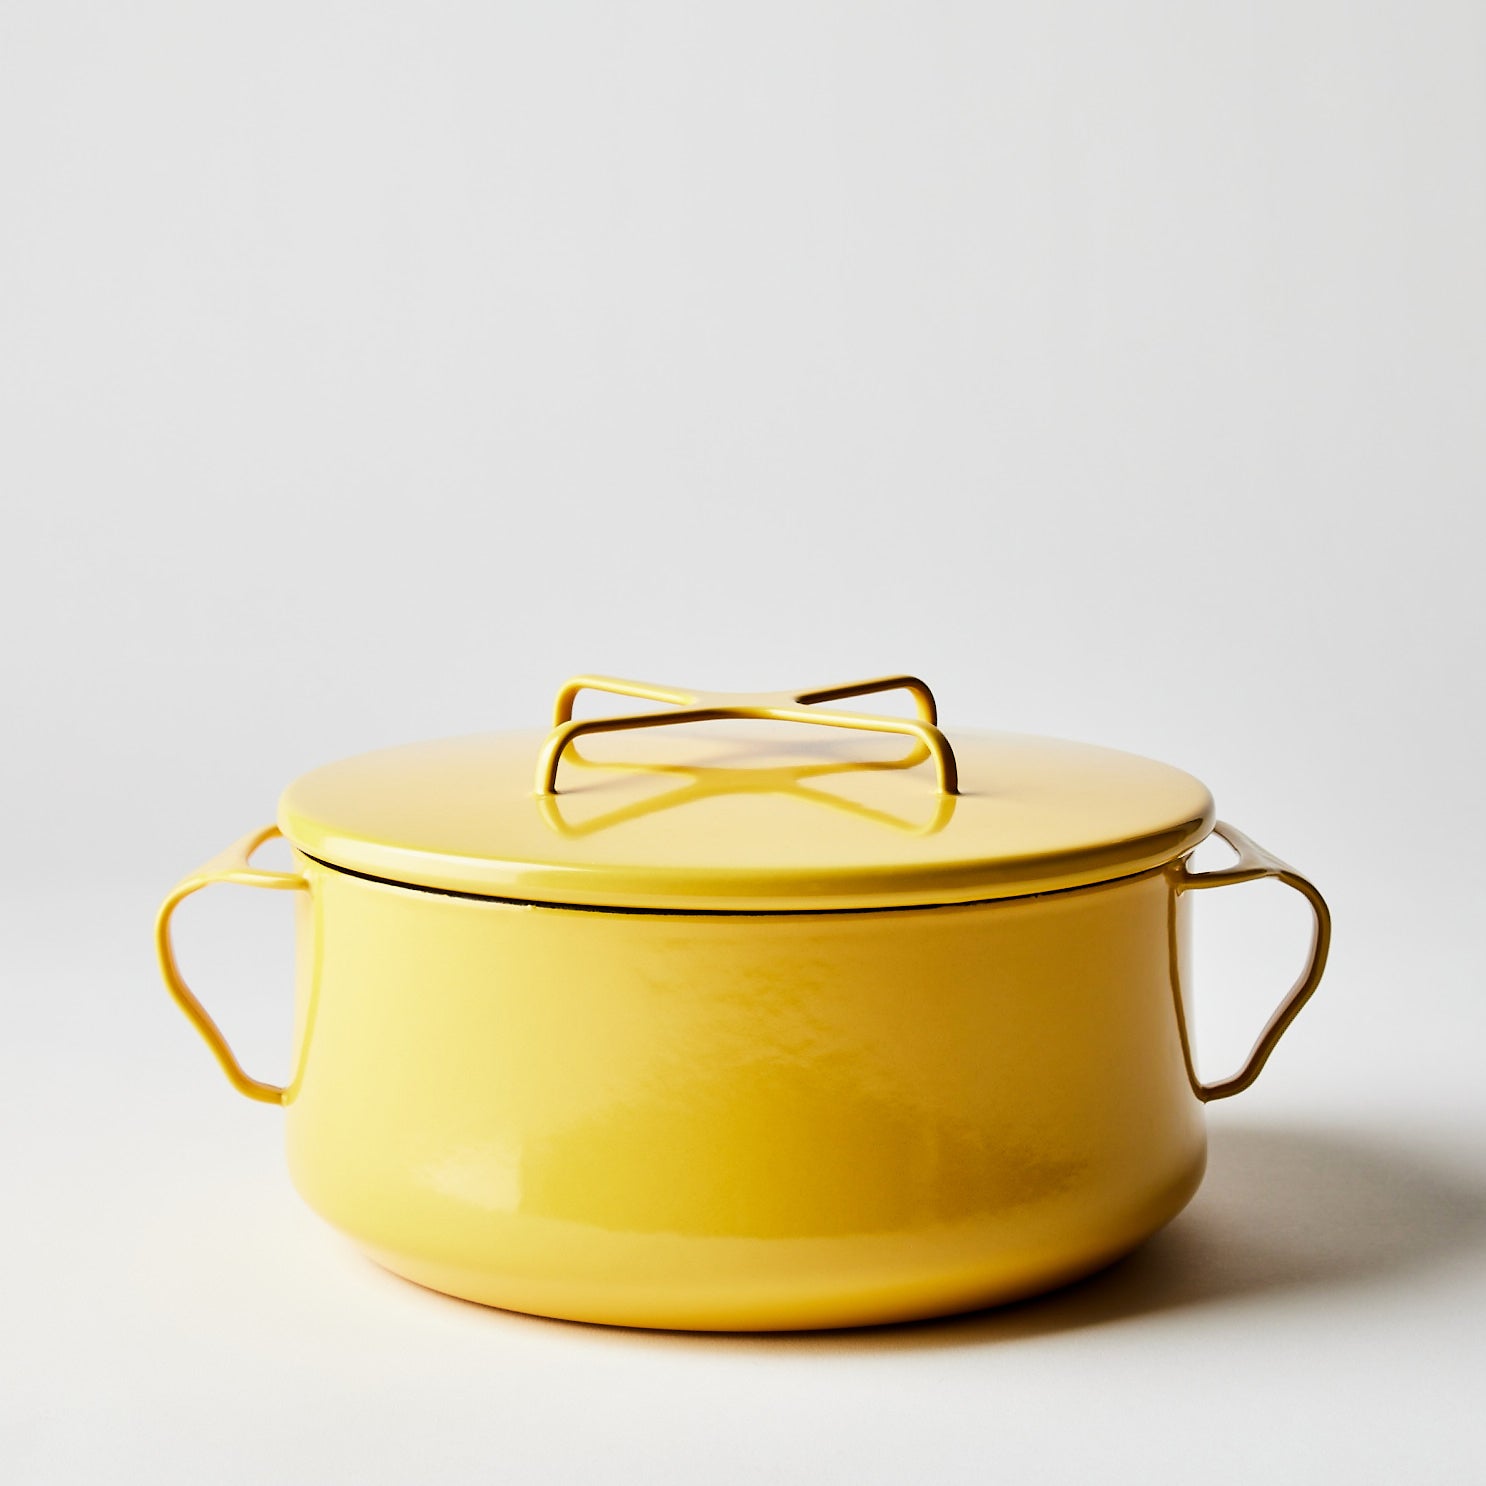 https://www.dansk.com/cdn/shop/products/2022-0308_dansk_kobenstyle-casserole-with-lid_yellow-4-qt_silo_ty-mecham_1486x.jpg?v=1654830886